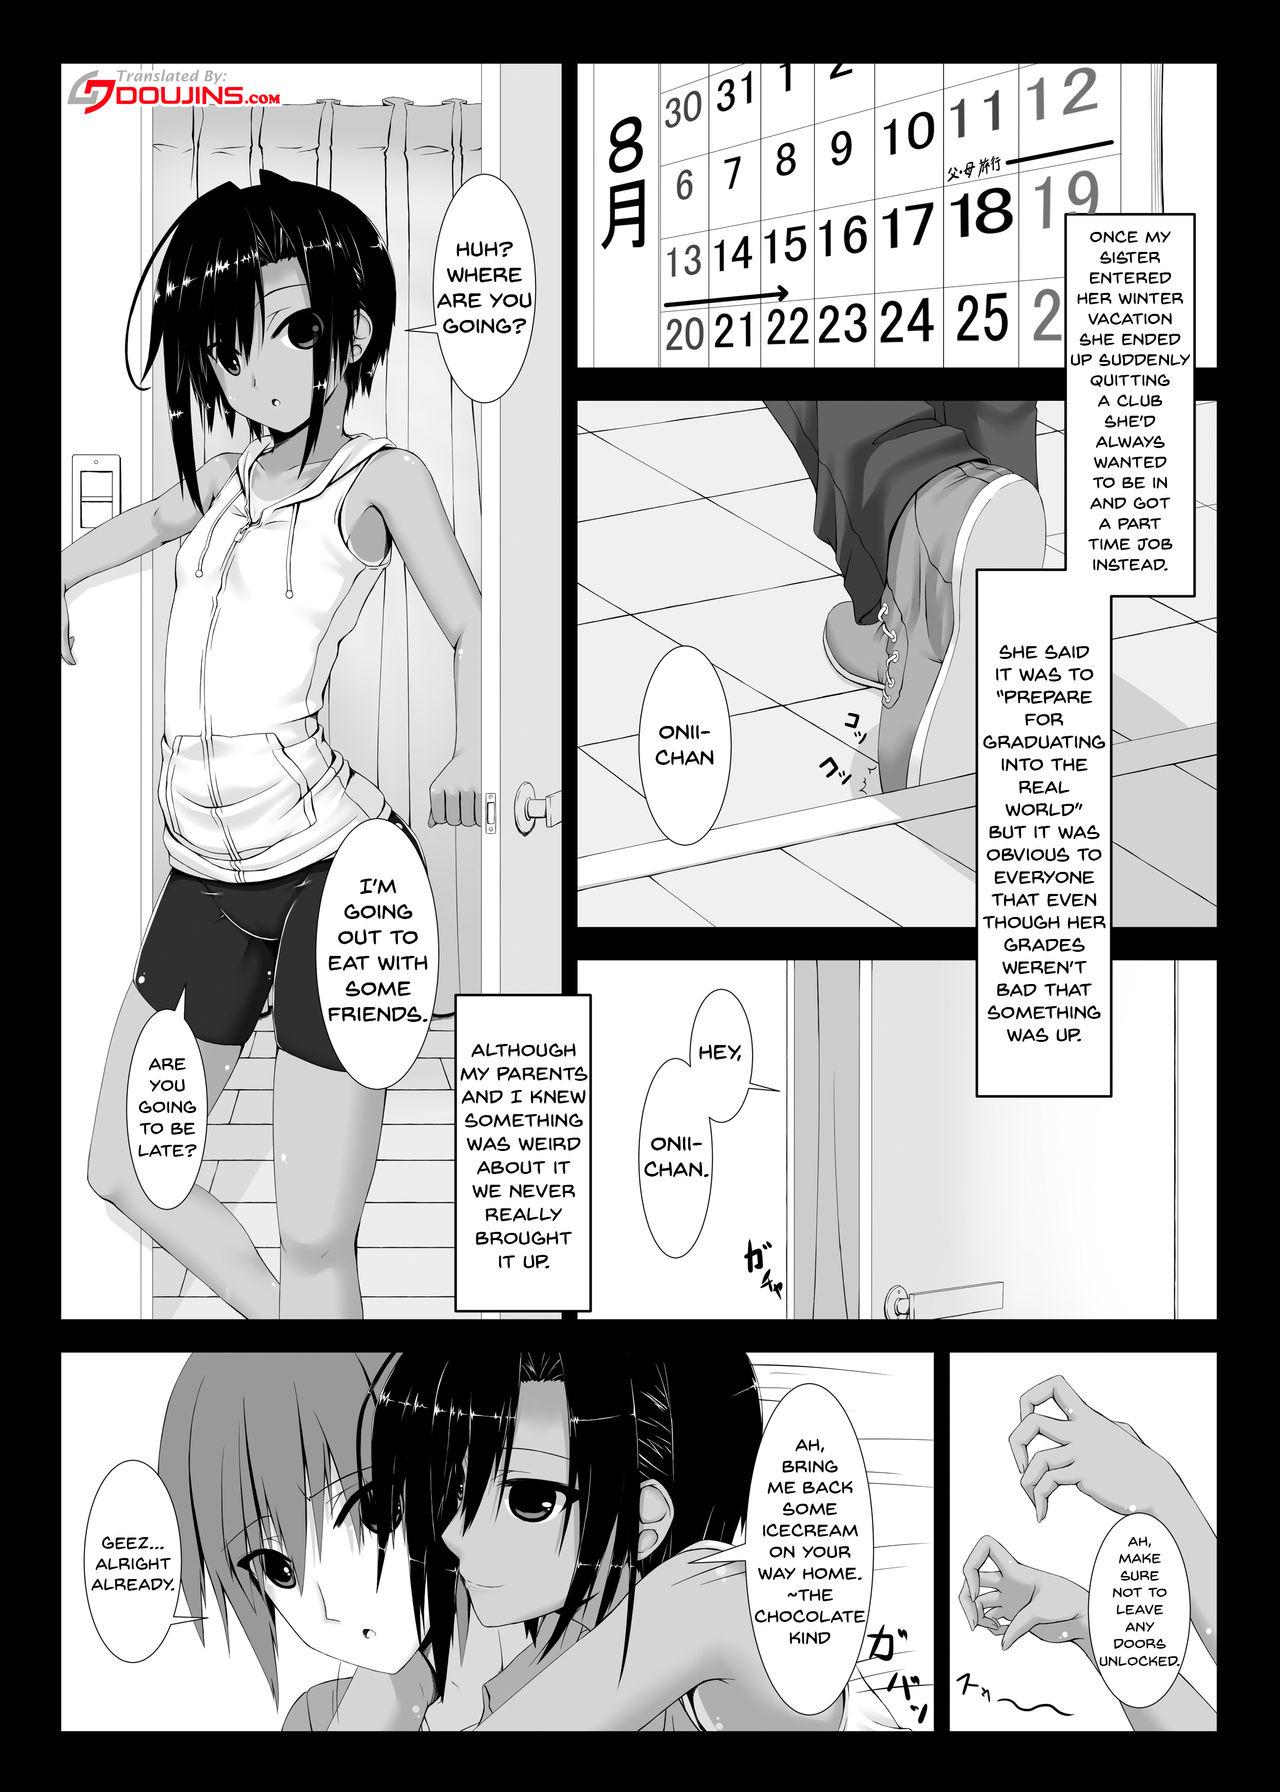 Anime Kuroneko Choco Ice - Original Cavala - Page 2